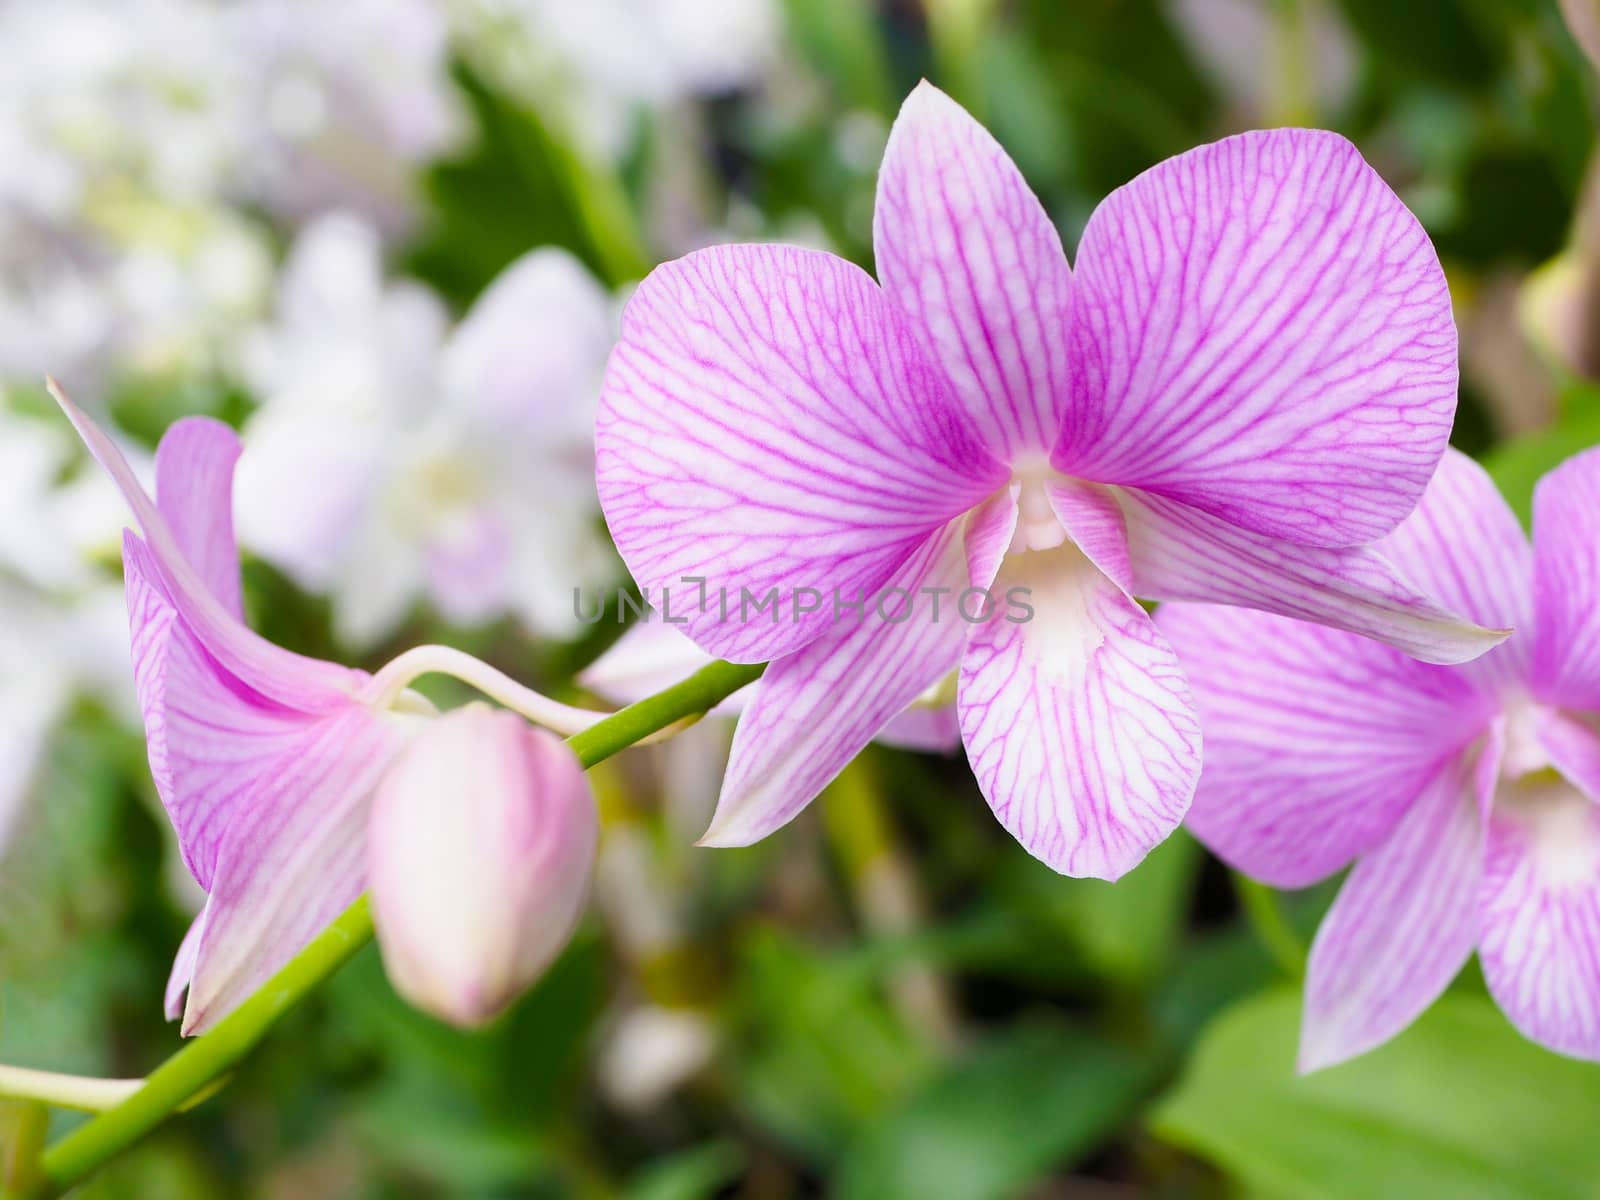 Light purple orchid flower in garden, found in Thailand.